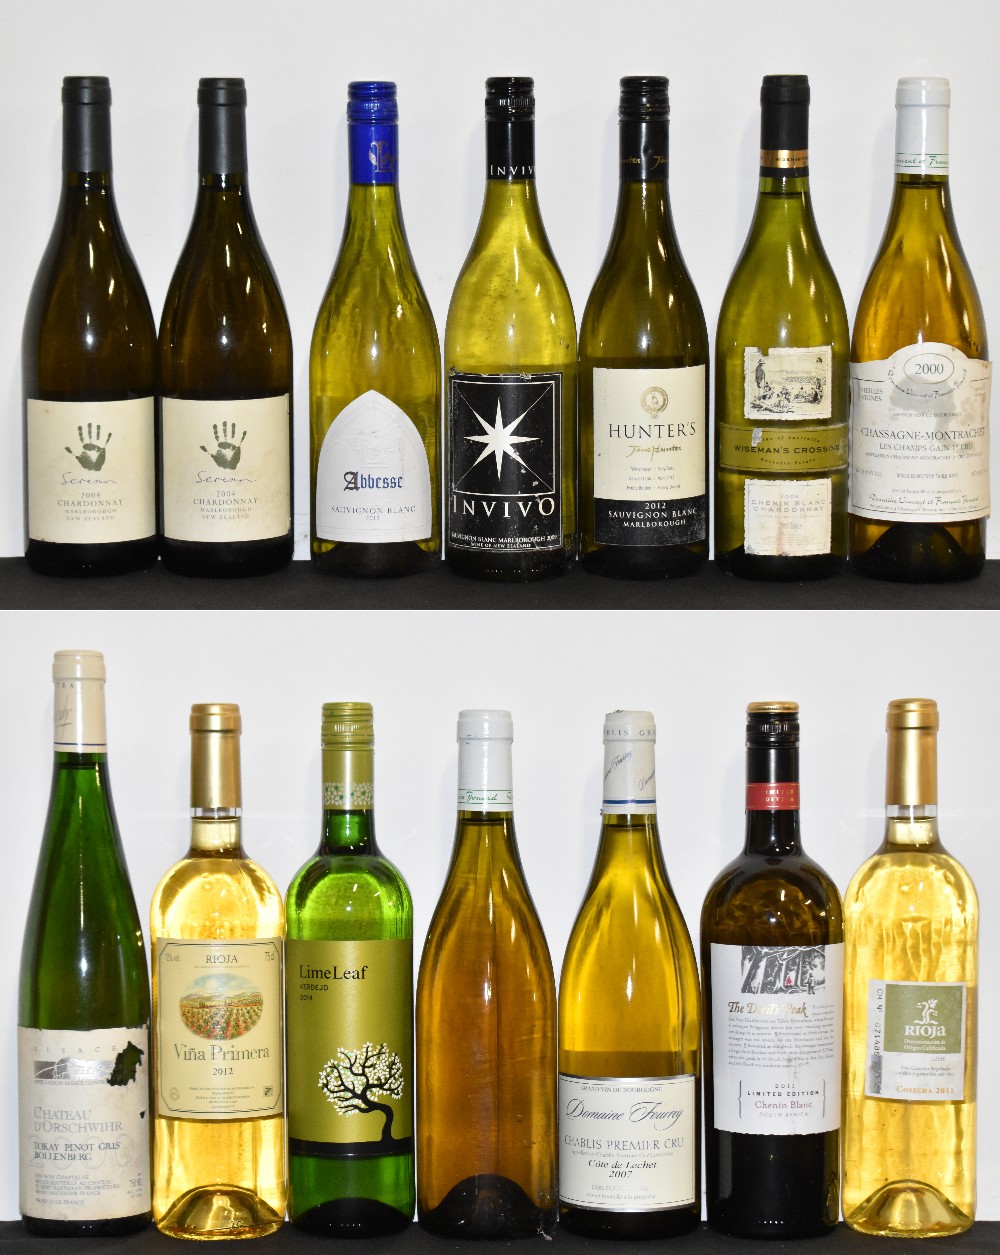 WHITE WINE; fourteen bottles of mixed white wine including one bottle Jane Hunter's, harvest date